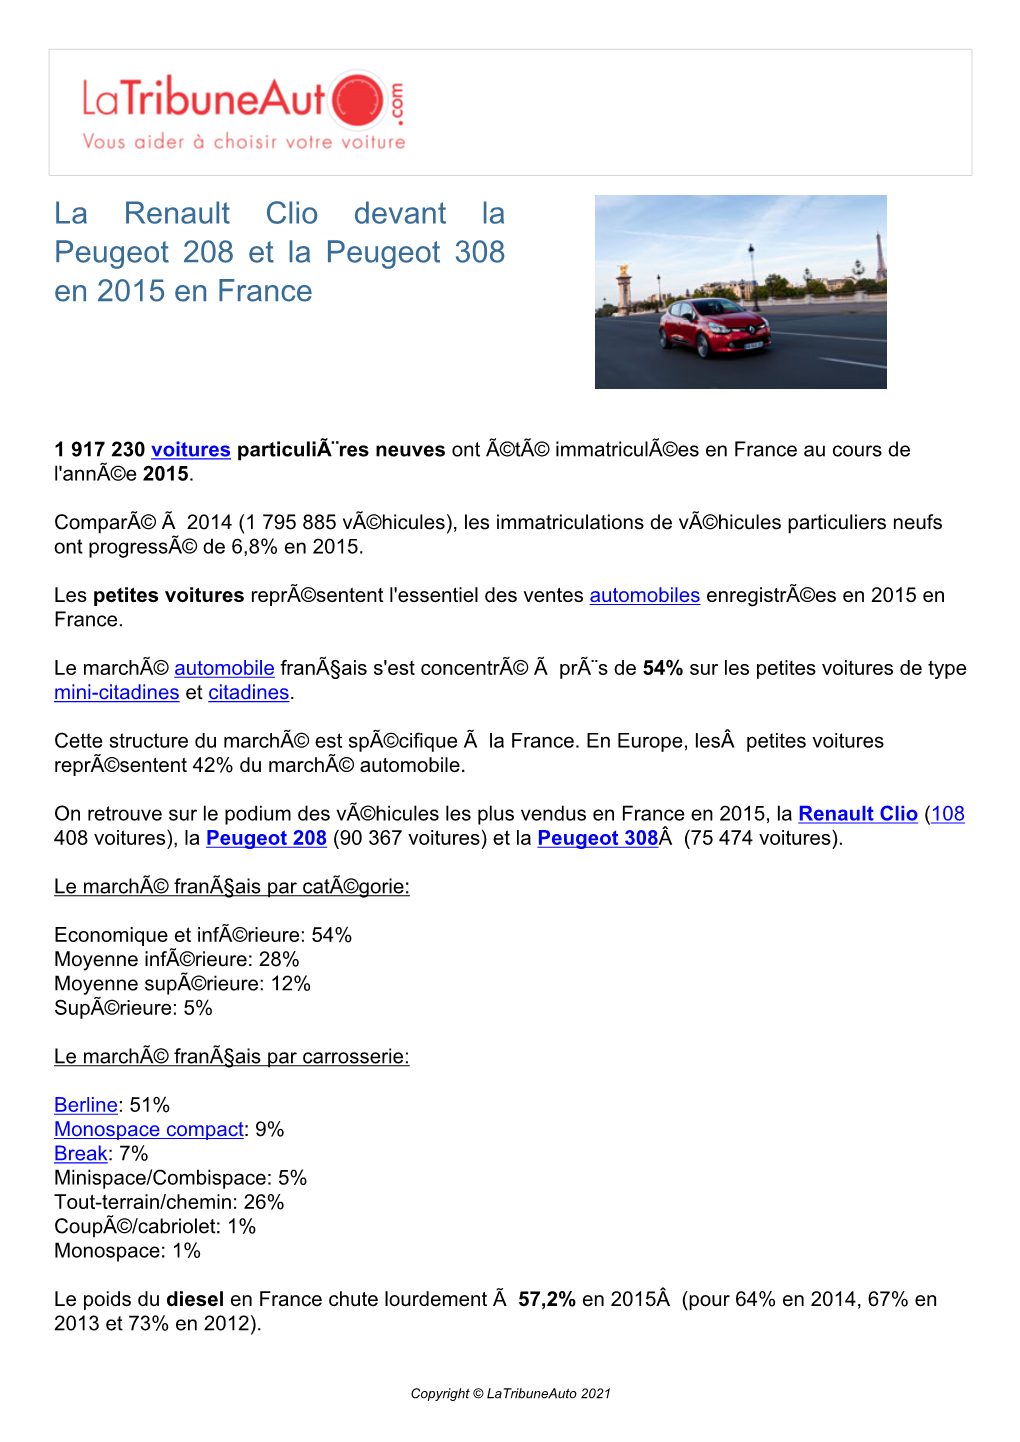 La Renault Clio Devant La Peugeot 208 Et La Peugeot 308 En 2015 En France